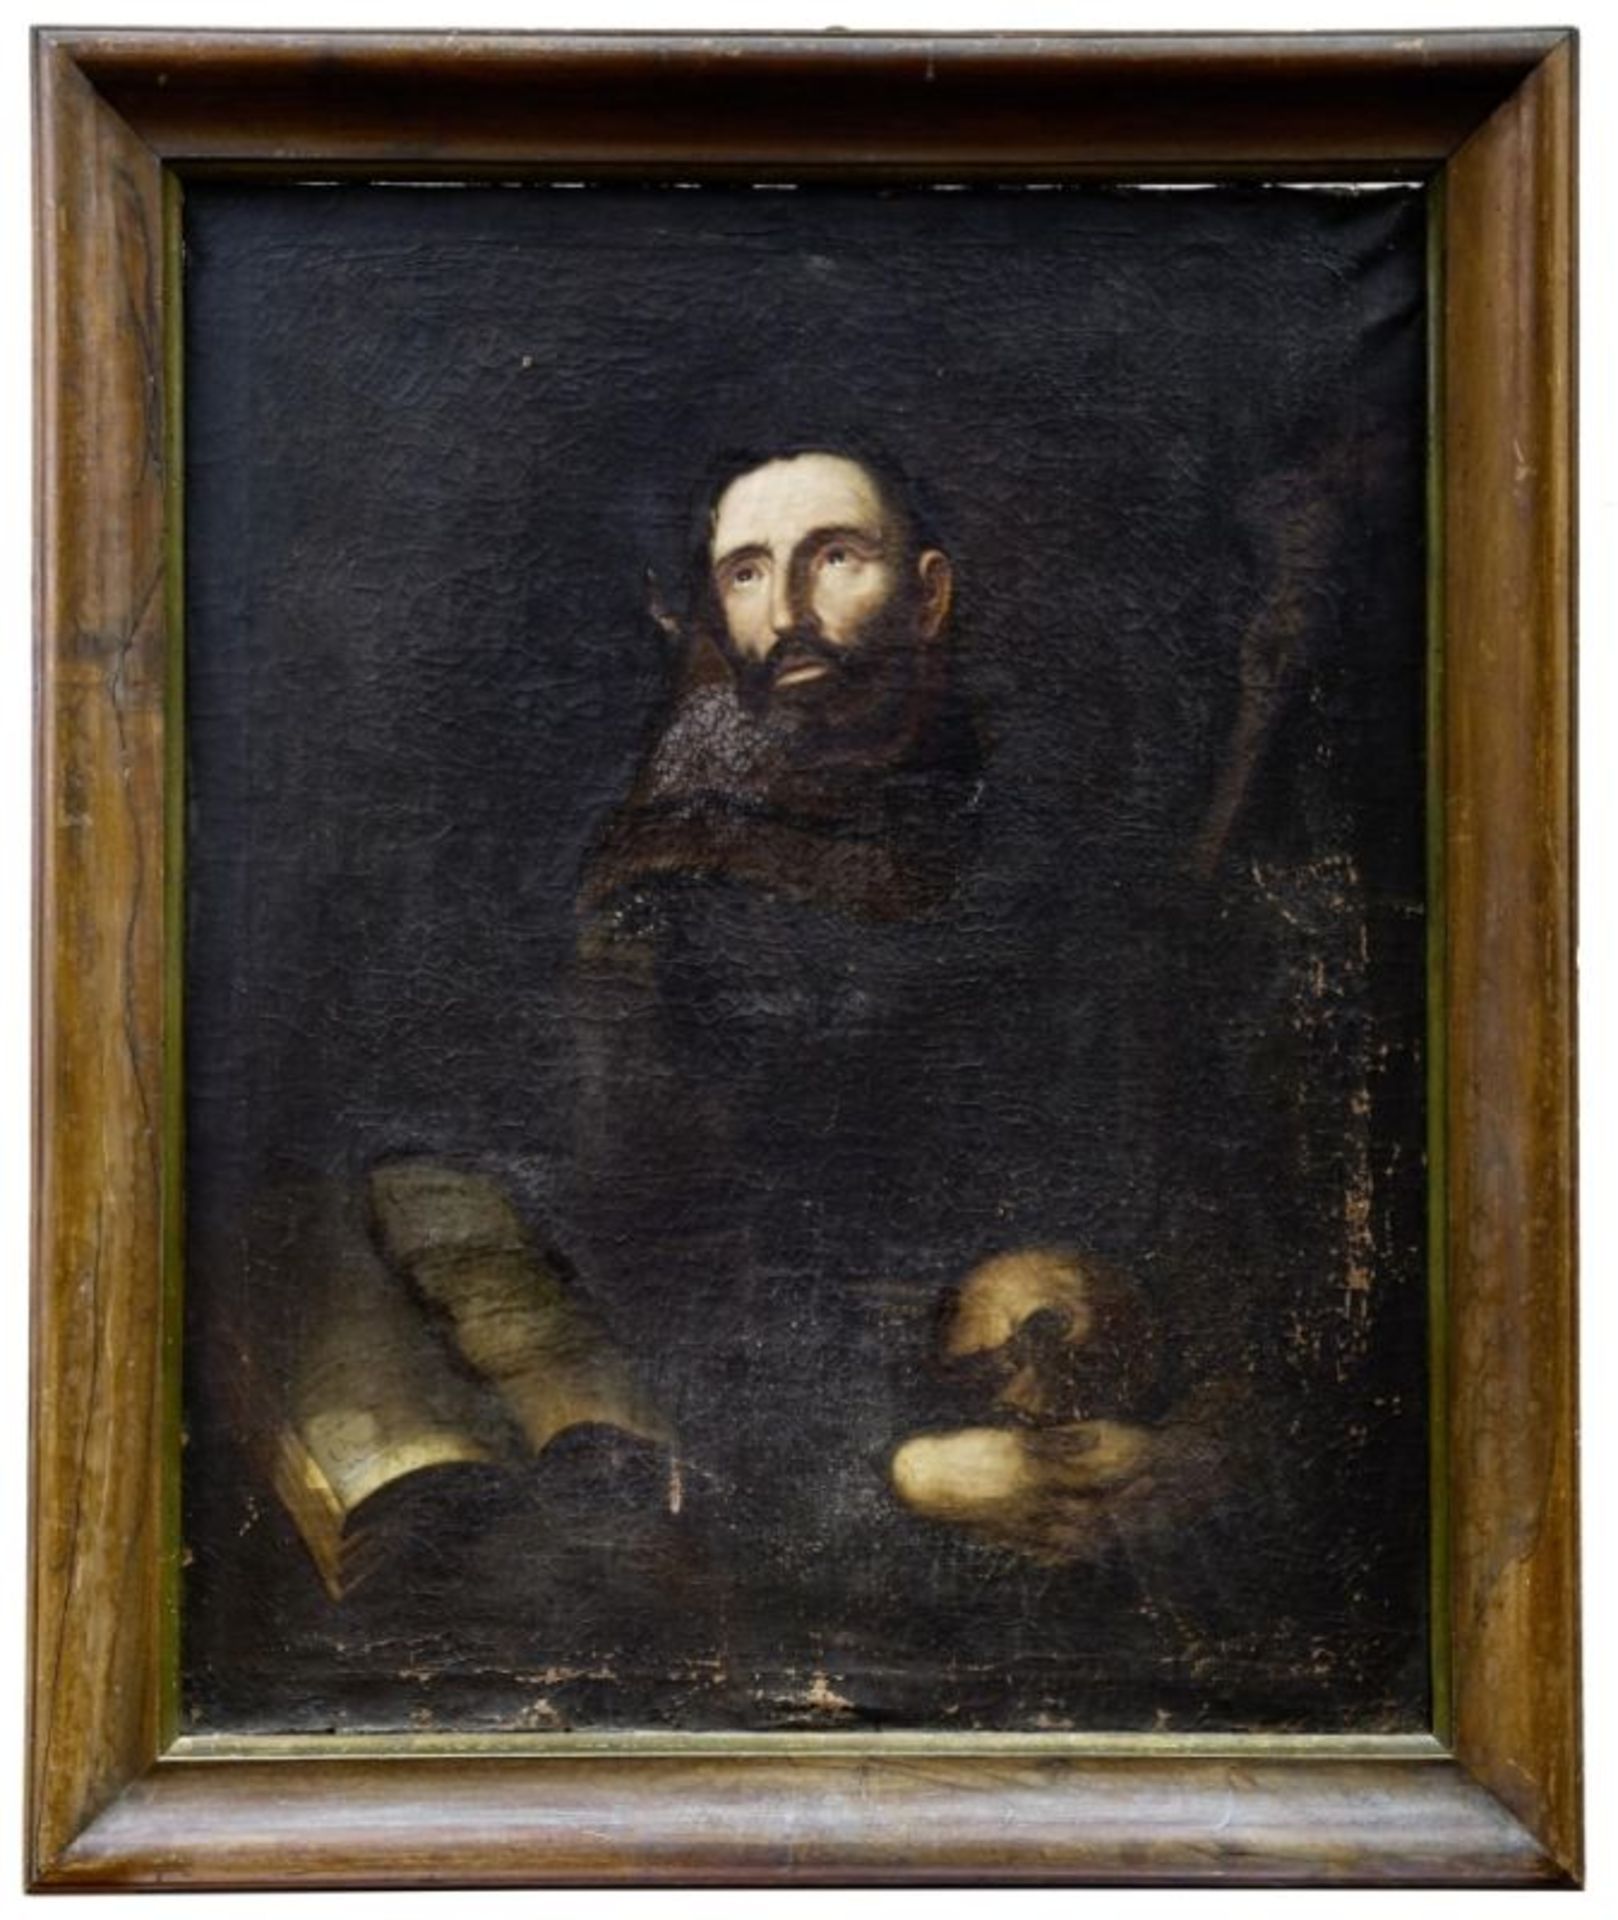 Der heilige Franziskus von Assisi empfängt die Stigmata, Italienischer Maler des 17. Jahrhunderts